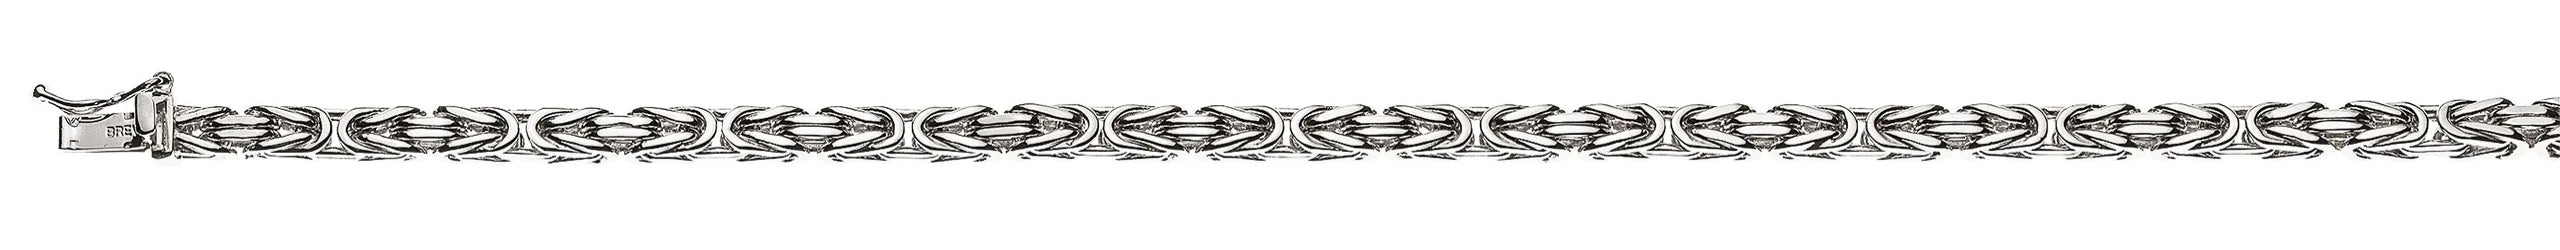 Armband Königskette klassisch Weissgold 750 ca. 3.3mm x 19cm